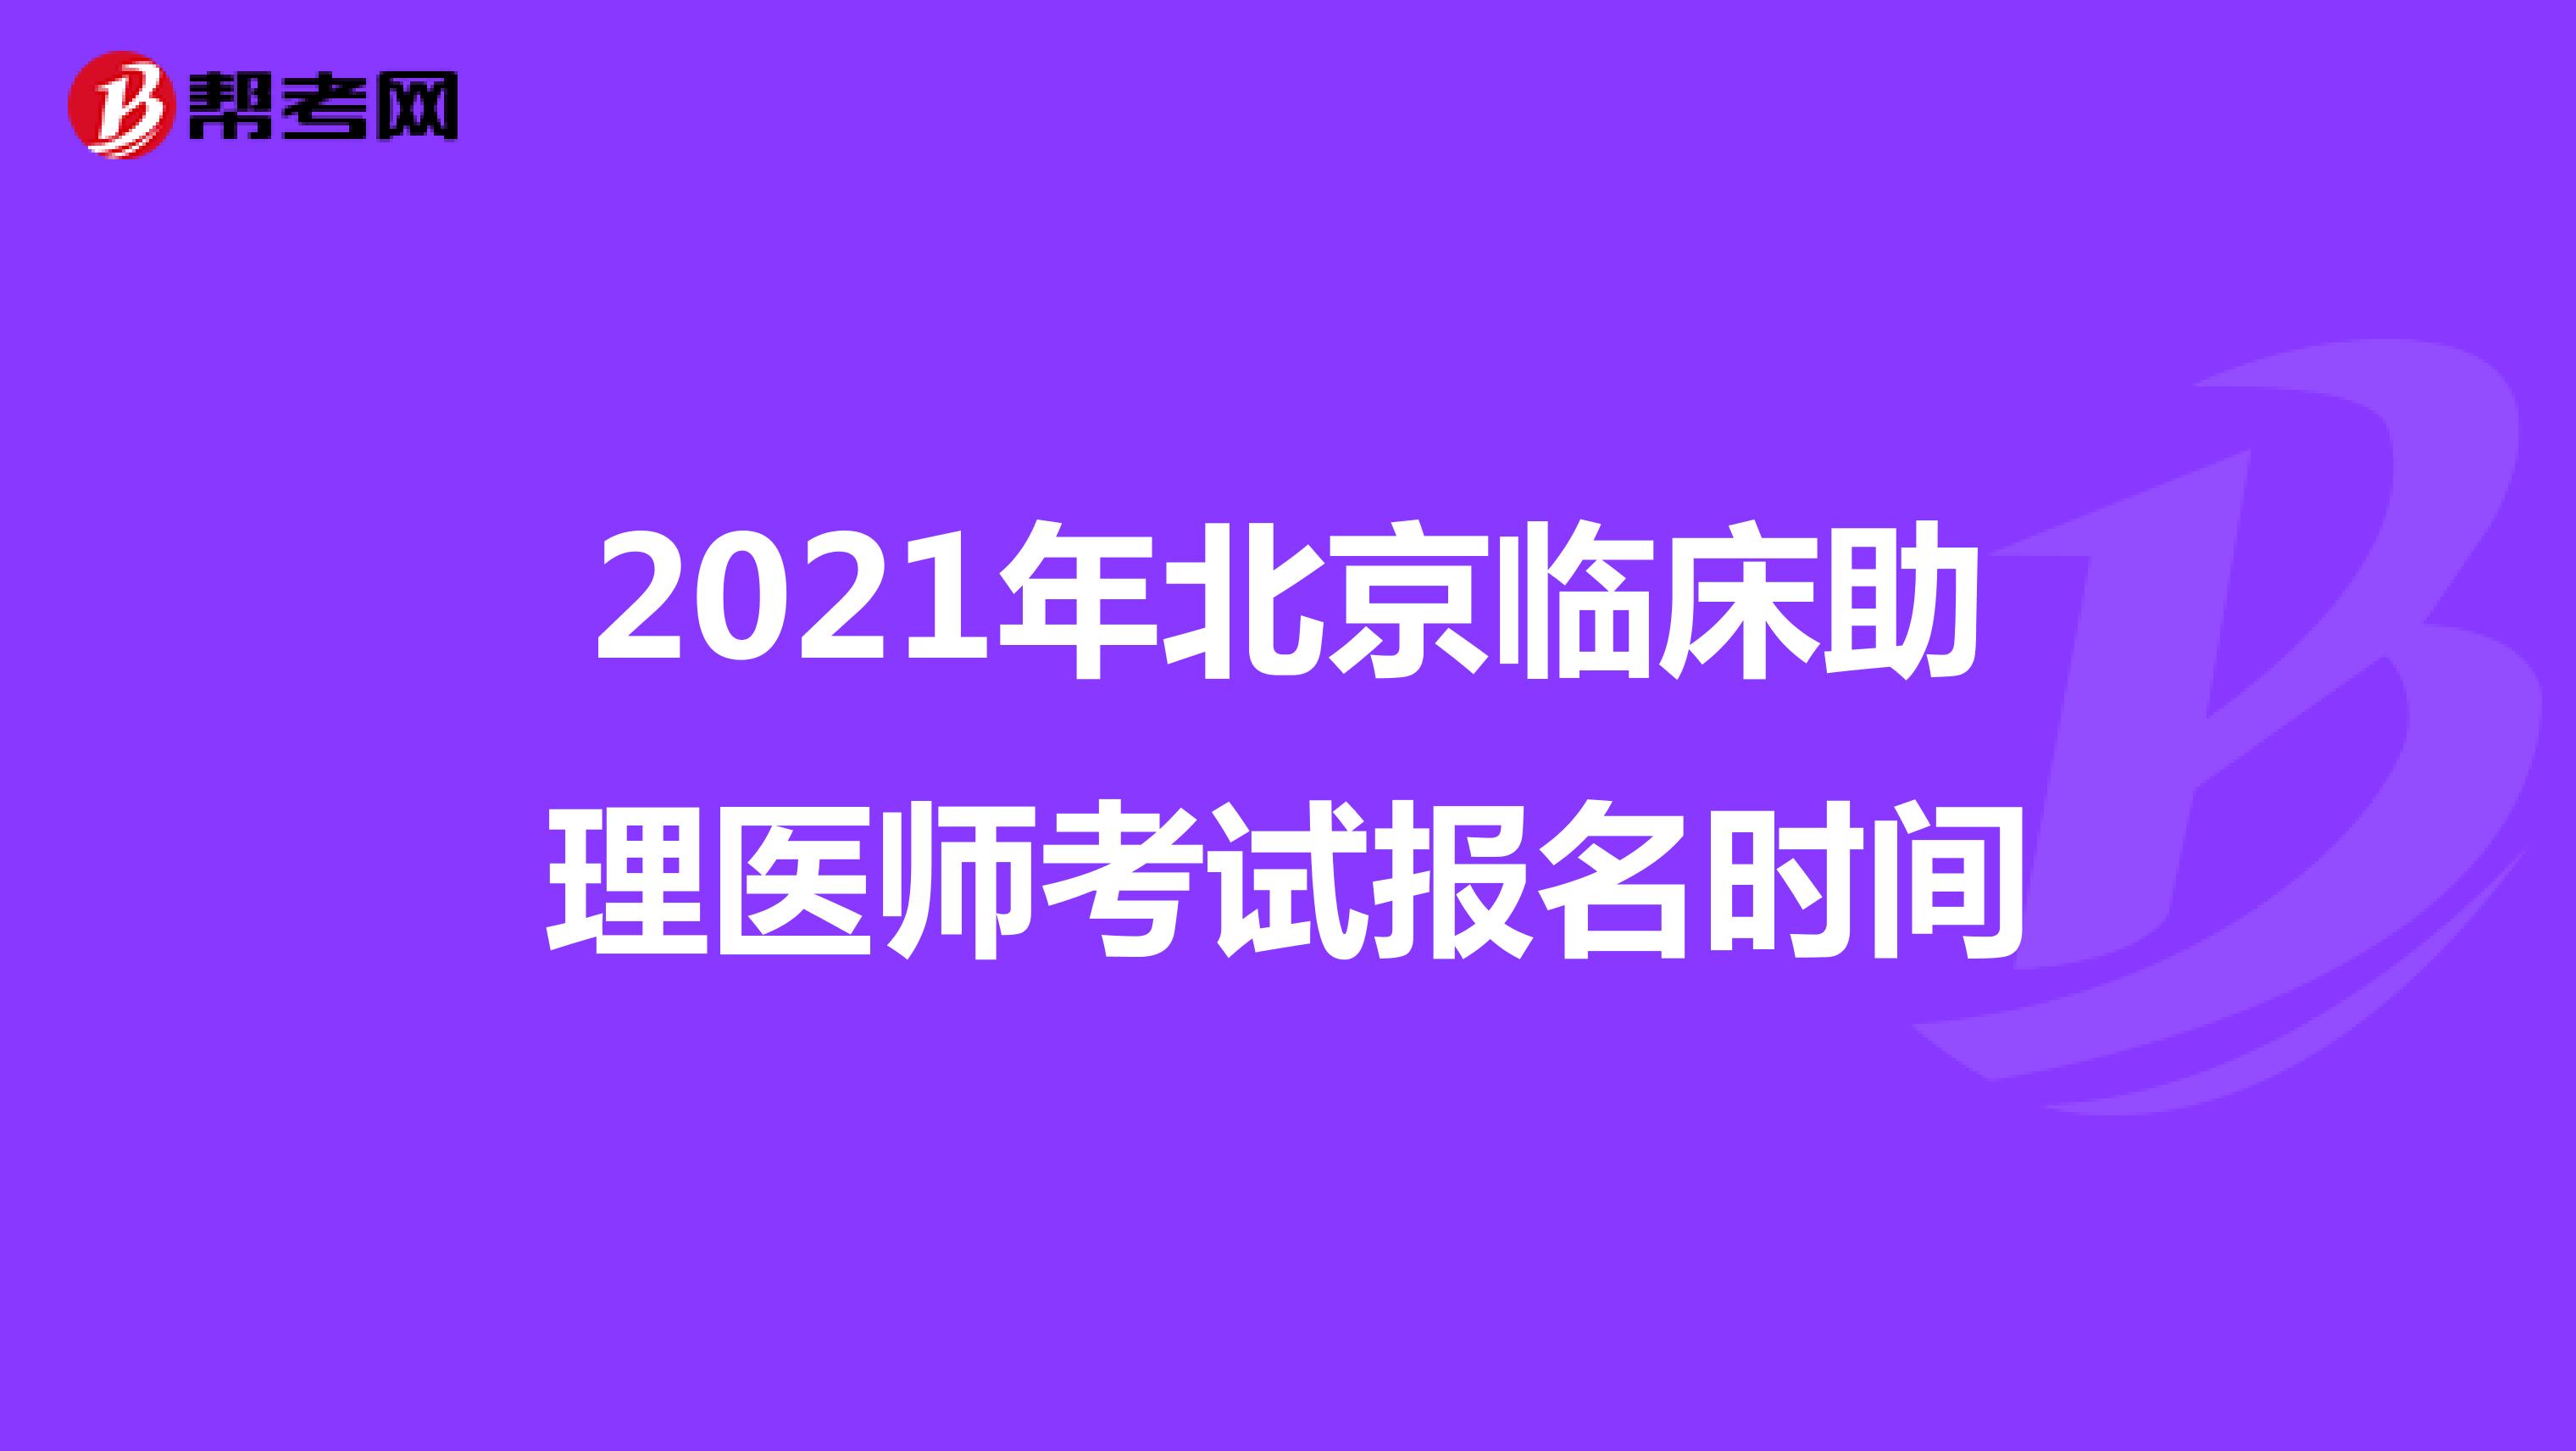 2021年北京临床助理医师考试报名时间